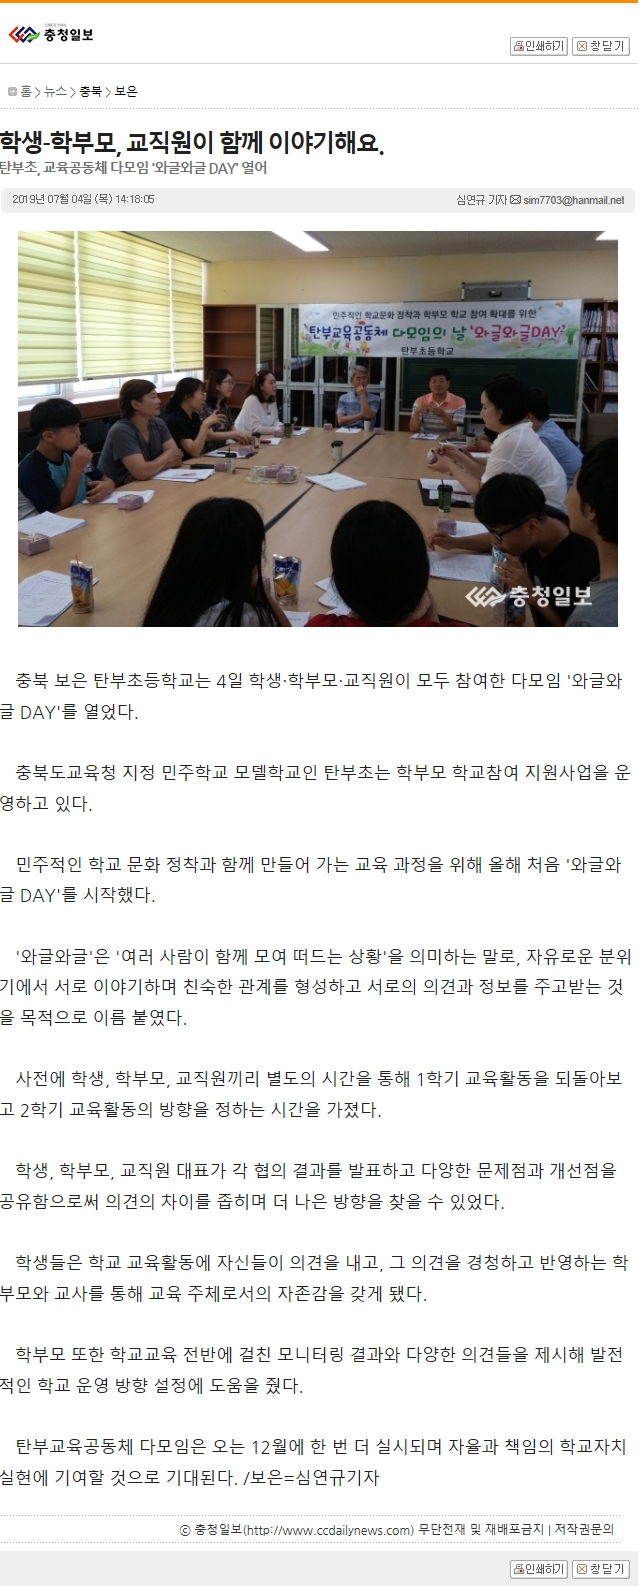 20190705_와글와글데이(충청일보).jpg